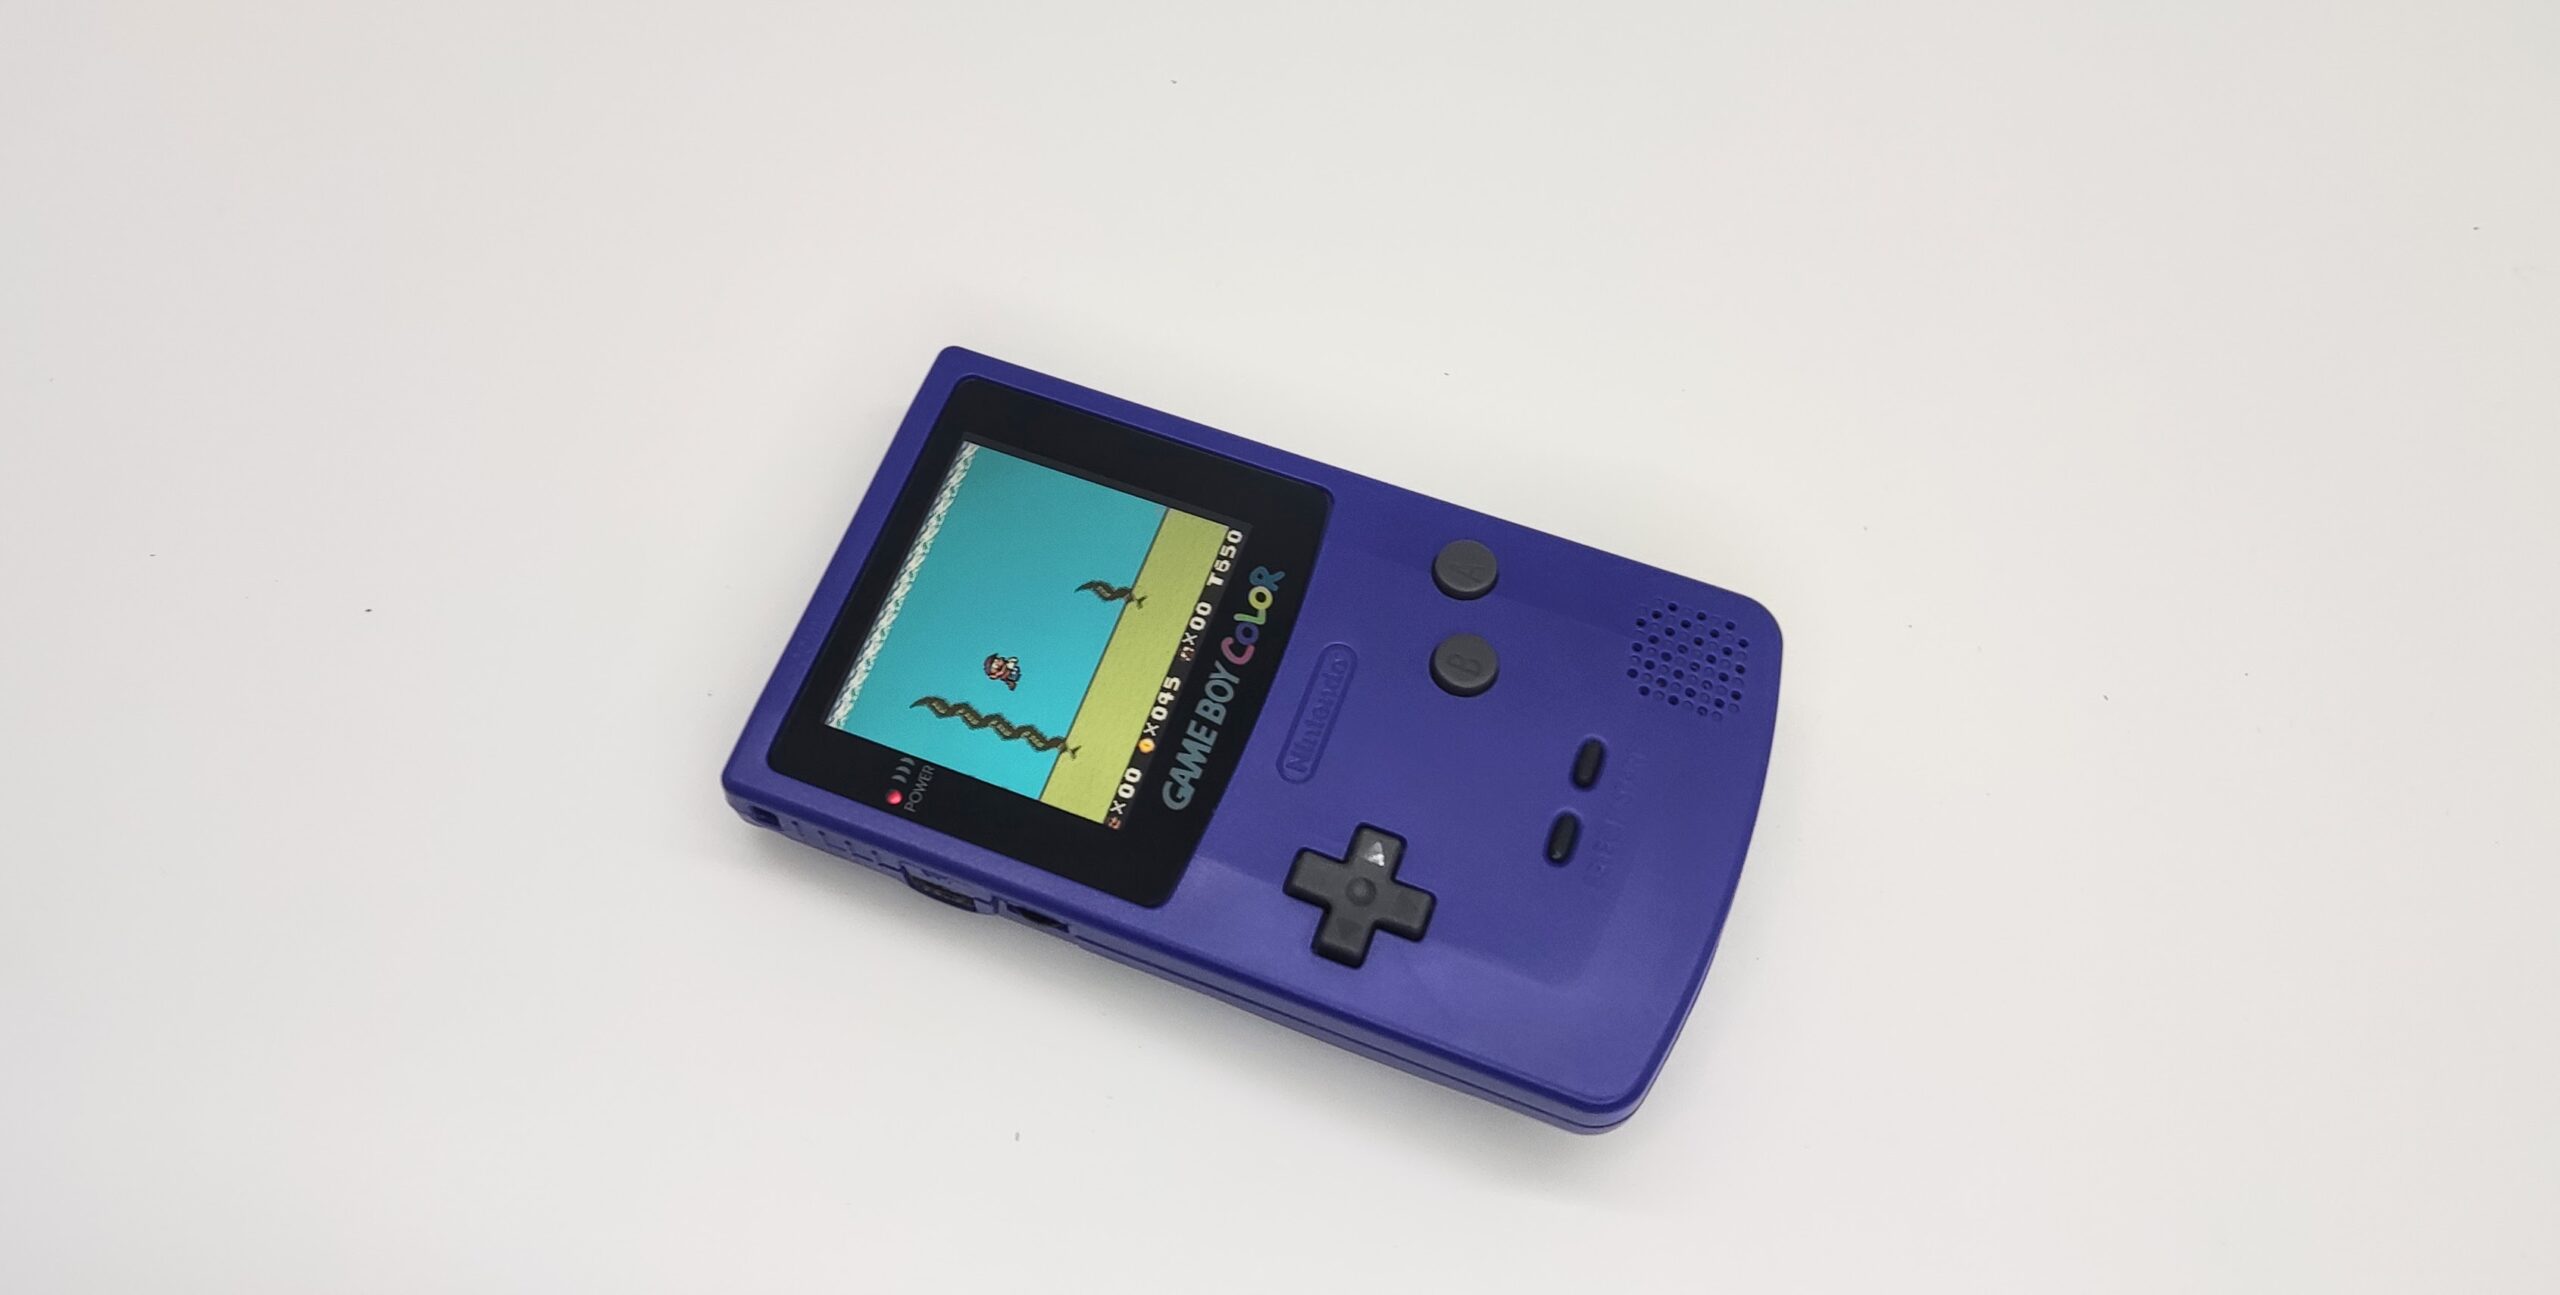 Nintendo Gameboy Game Boy Color Console (Grape)